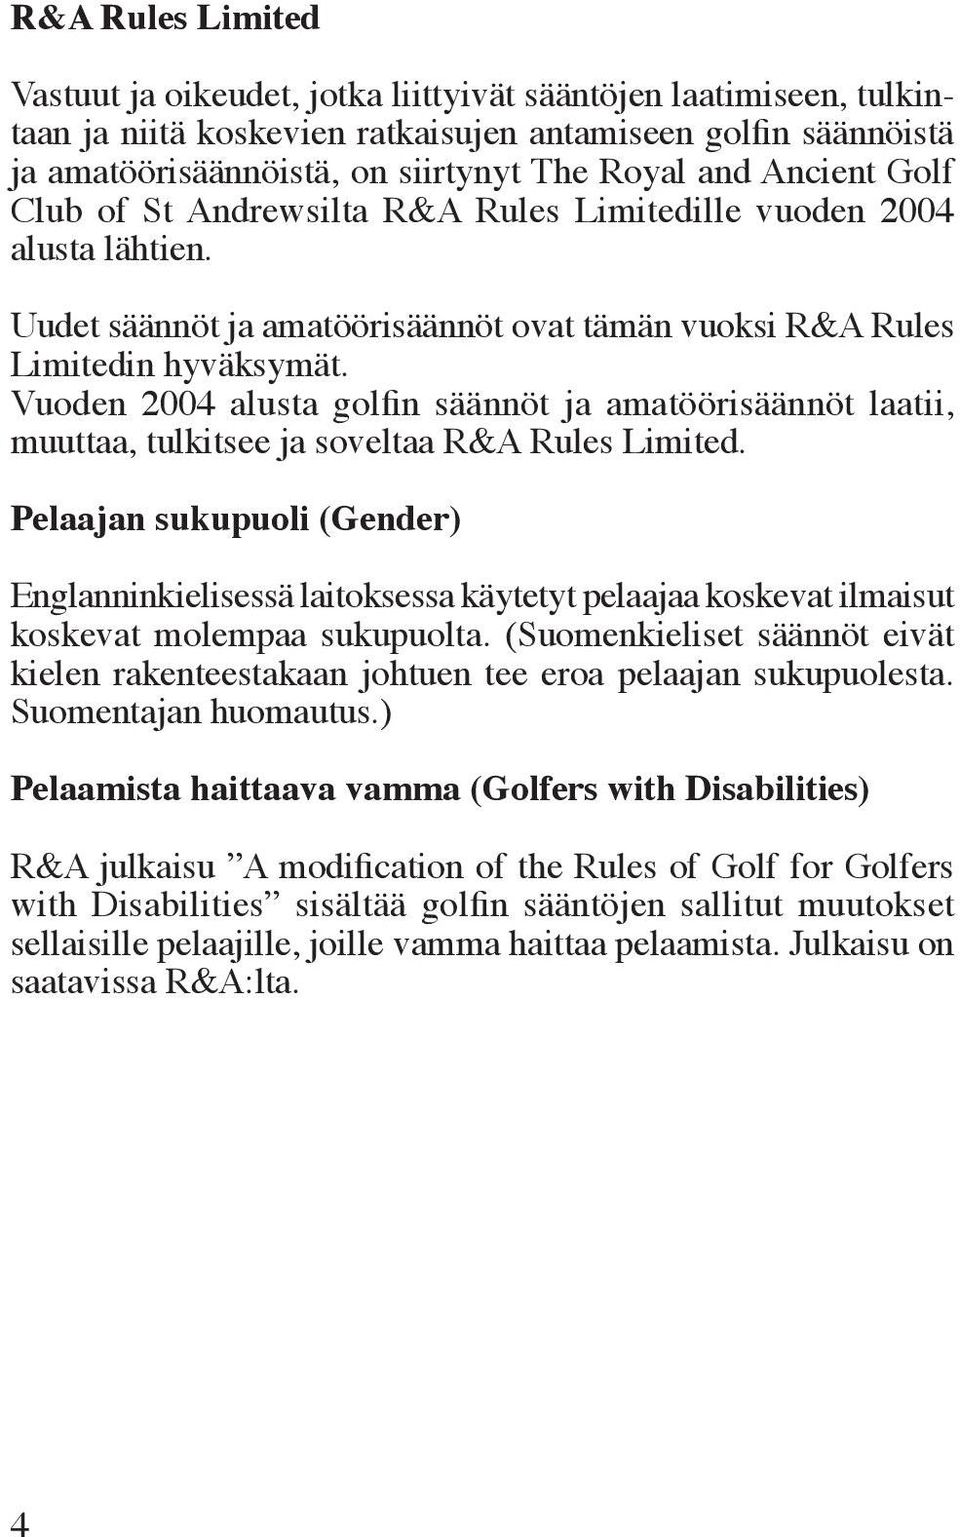 Vuoden 2004 alusta golfin säännöt ja amatöörisäännöt laatii, muuttaa, tulkitsee ja soveltaa R&A Rules Limited.